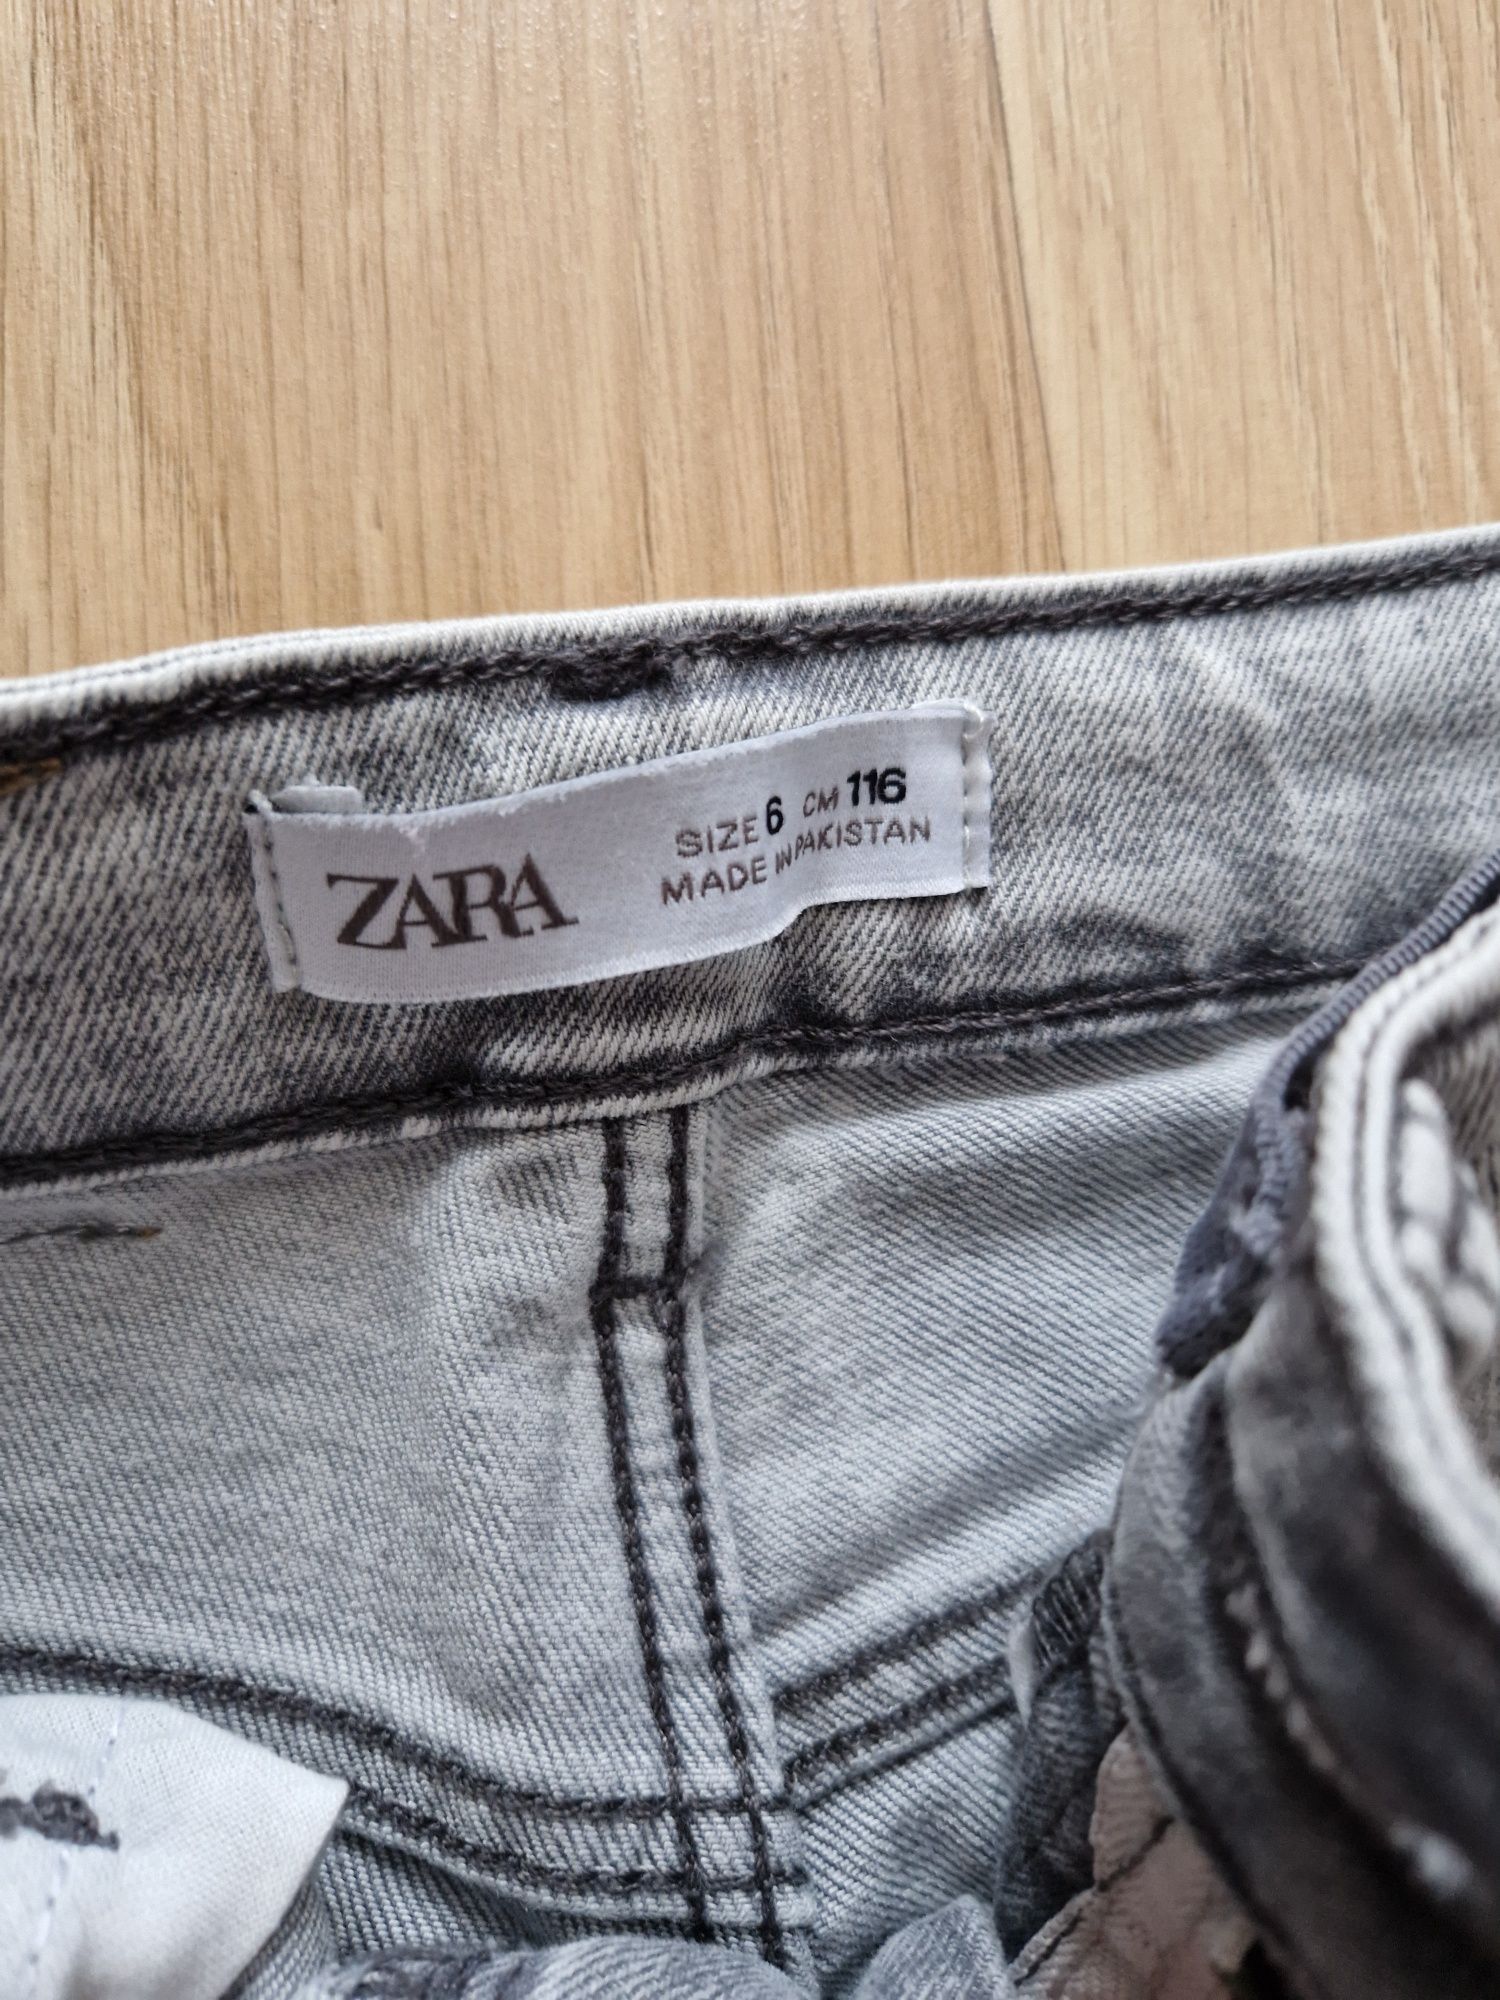 Szare jeansy dziewczęce ZARA rozmiar 116 cm